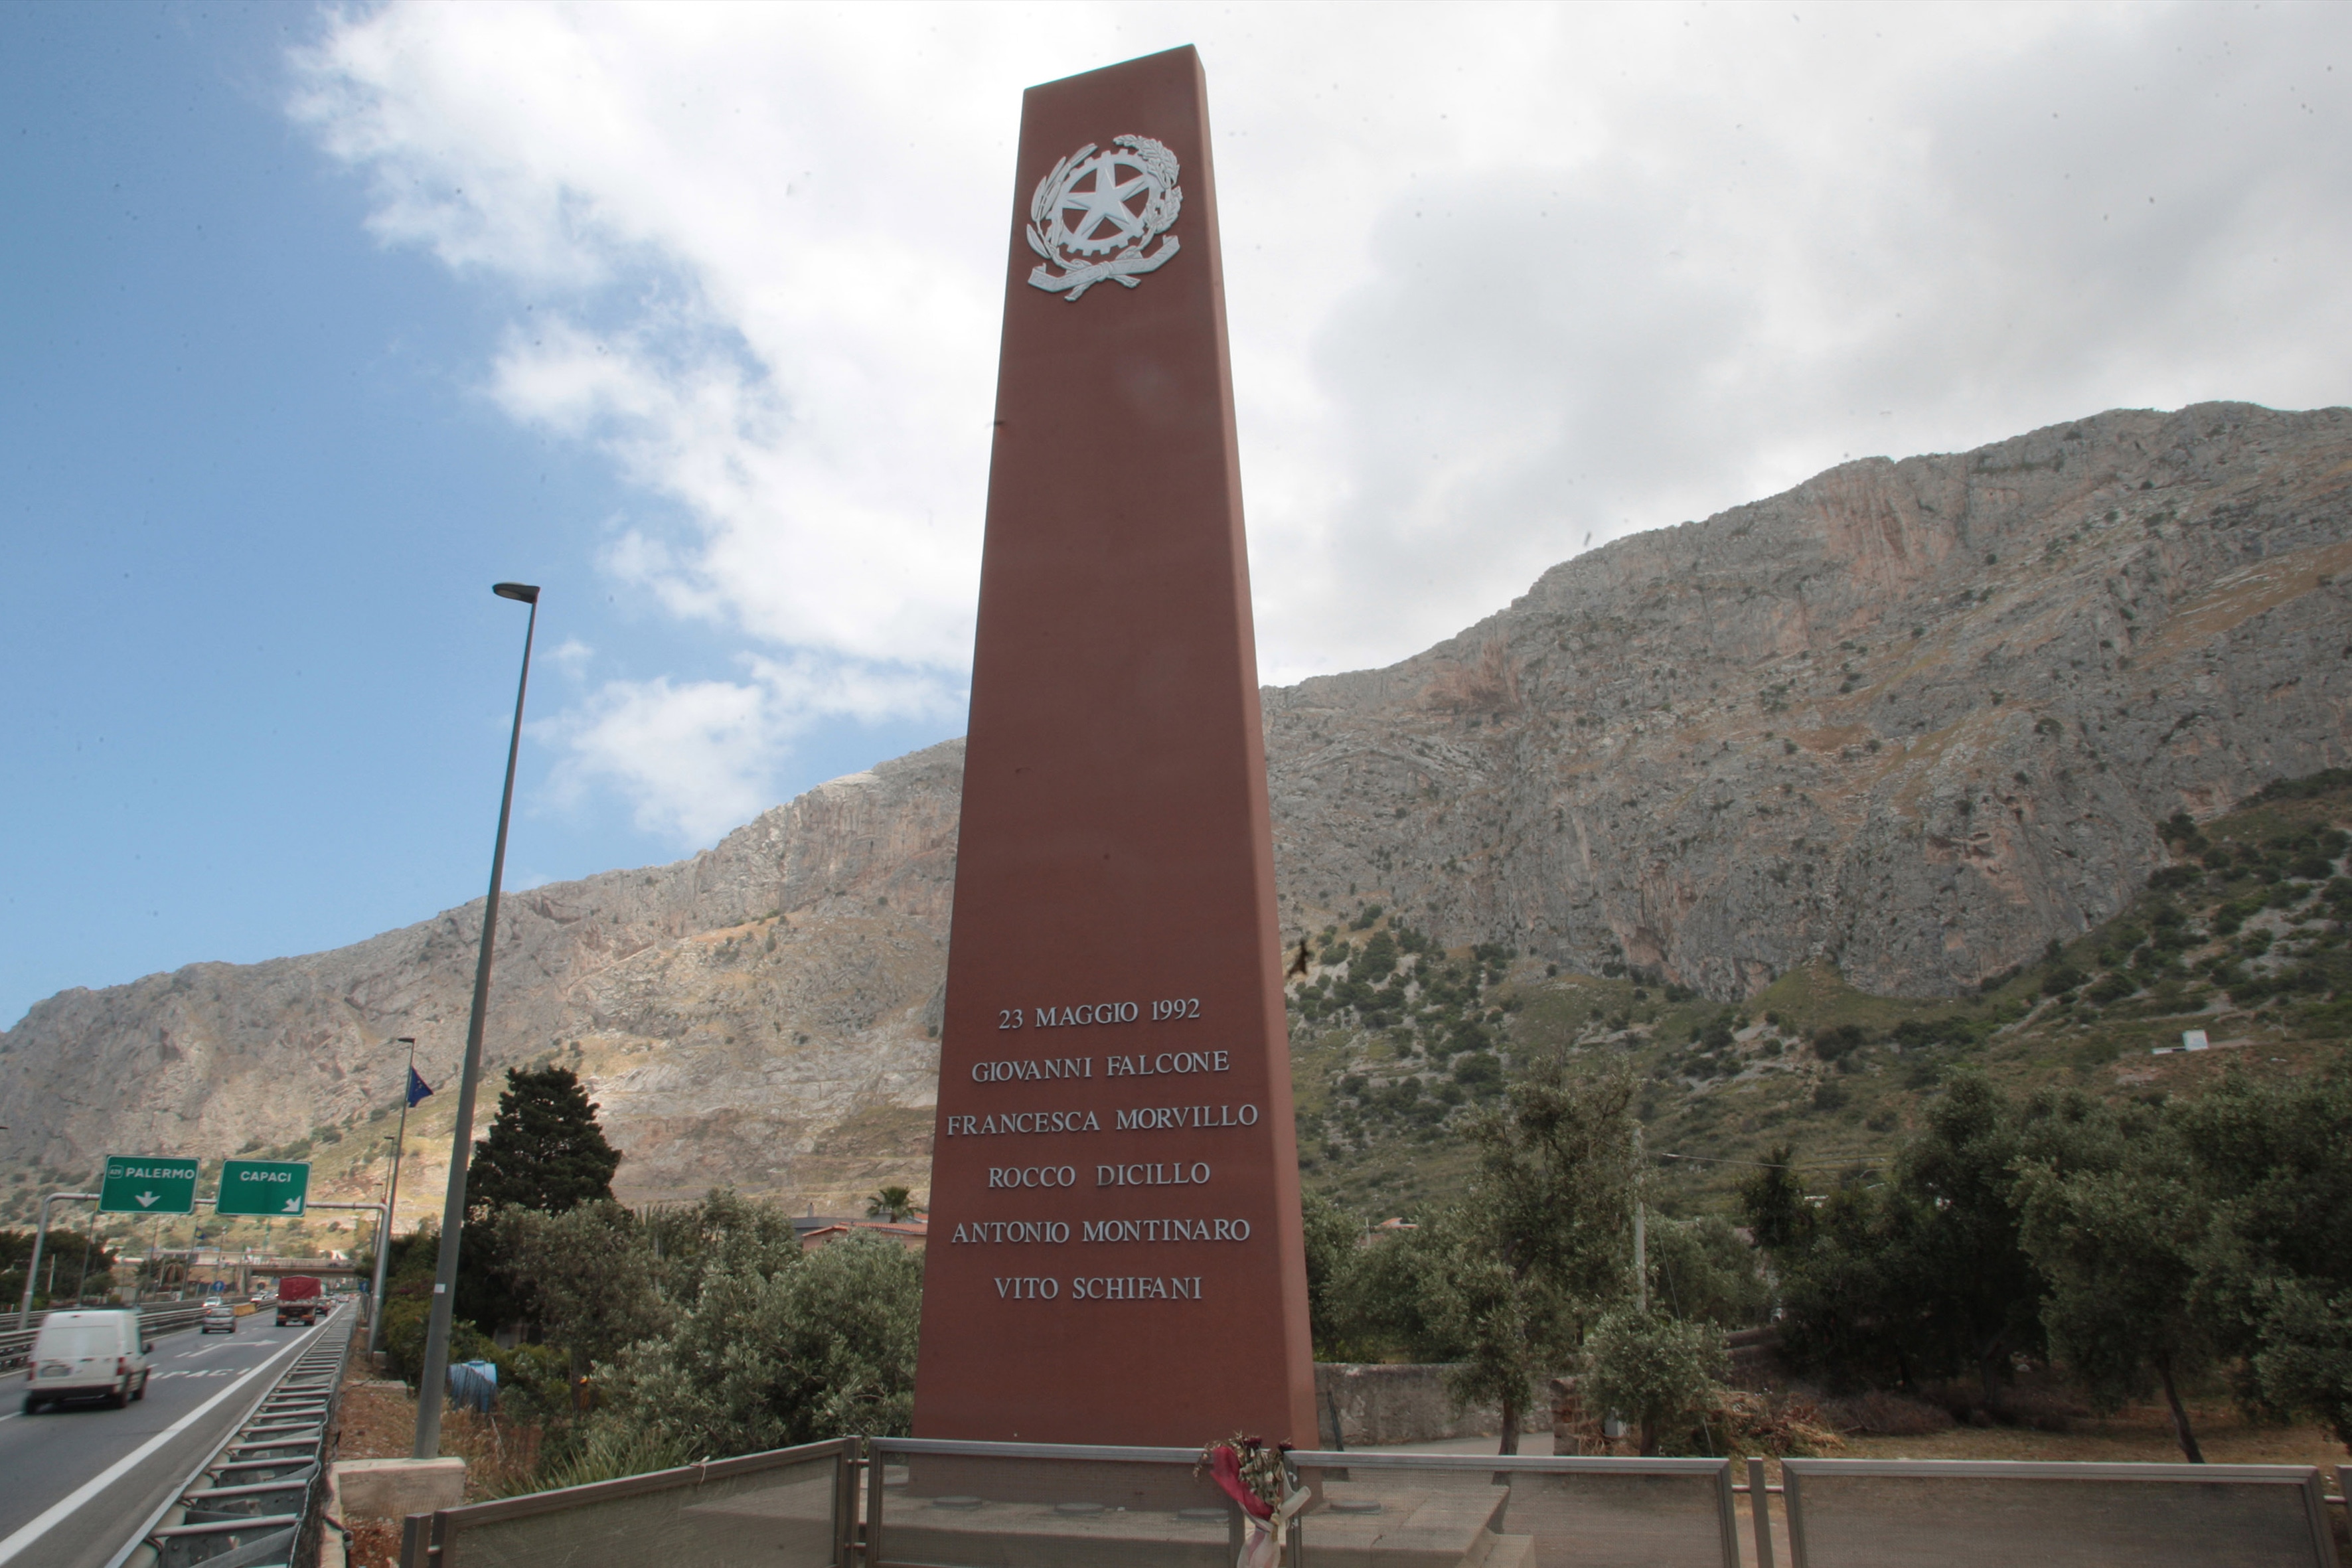 Monumento in memoria dei caduti della strage di Capaci. La stele si trova in autostrada, all'altezza del punto in cui è avvenuta l’esplosione